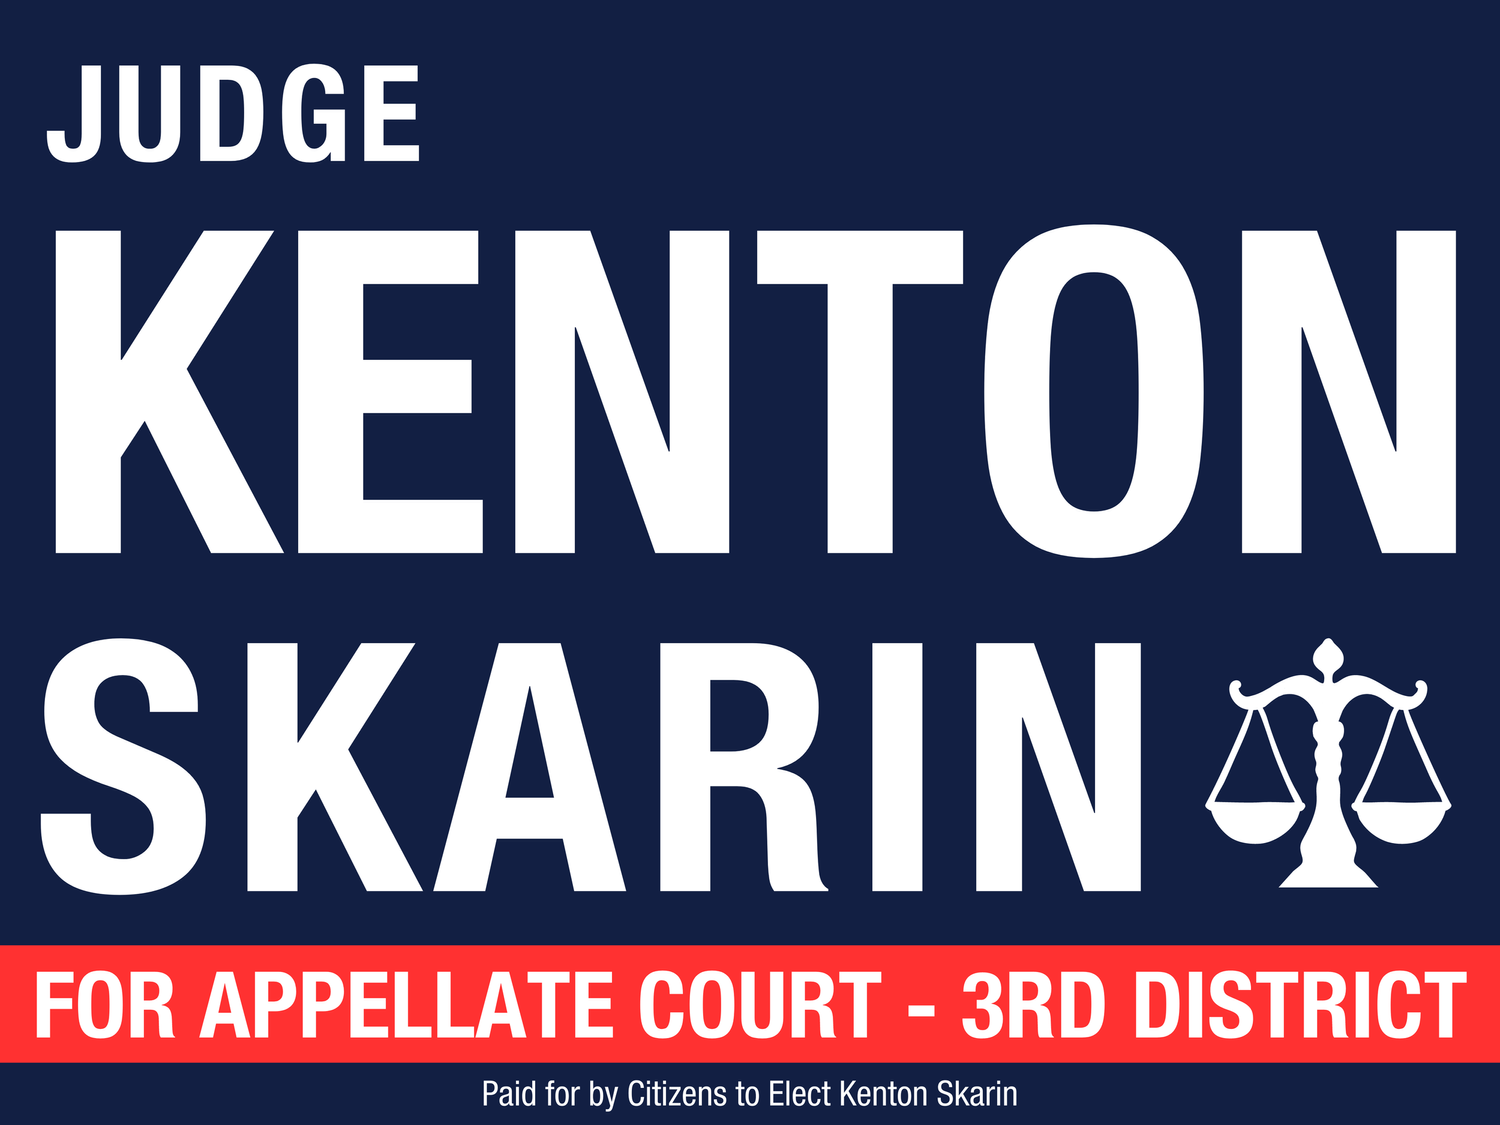 Judge Kenton Skarin for Appellate Court